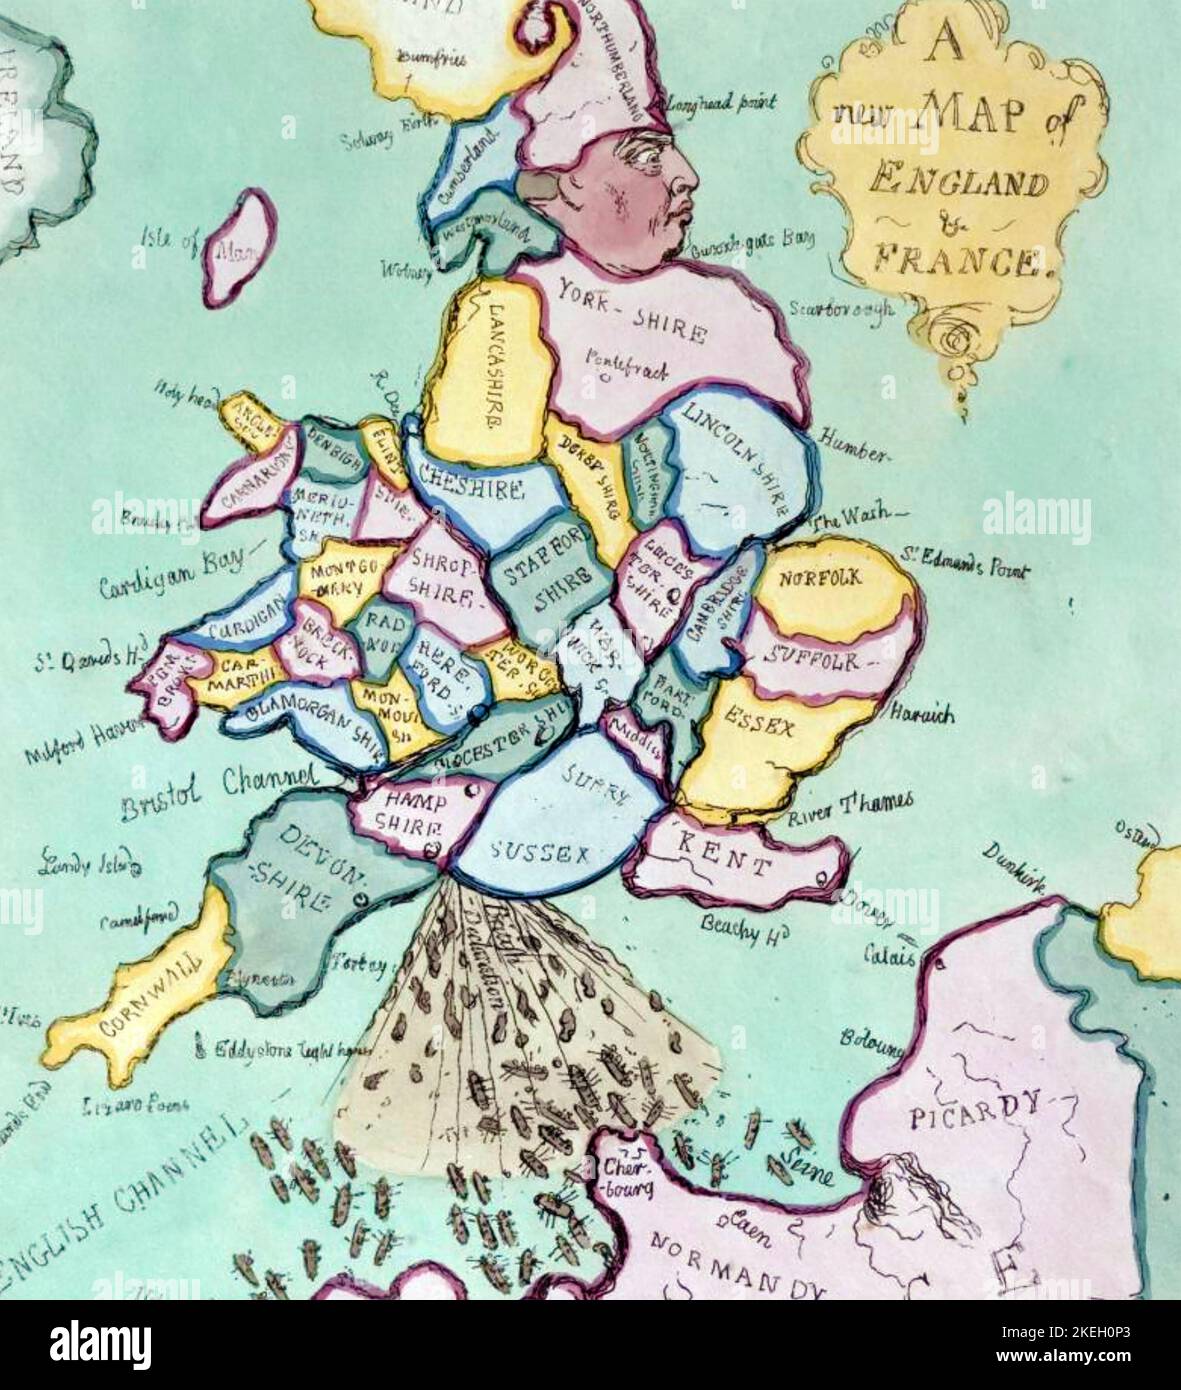 JAMES GILLRAY (7565-1818) englischer Karikaturist. 'Eine neue Karte von England und Frankreich - die französische Invasion oder John Bull bombardiert die Bum-Boote' - Detail. Stockfoto